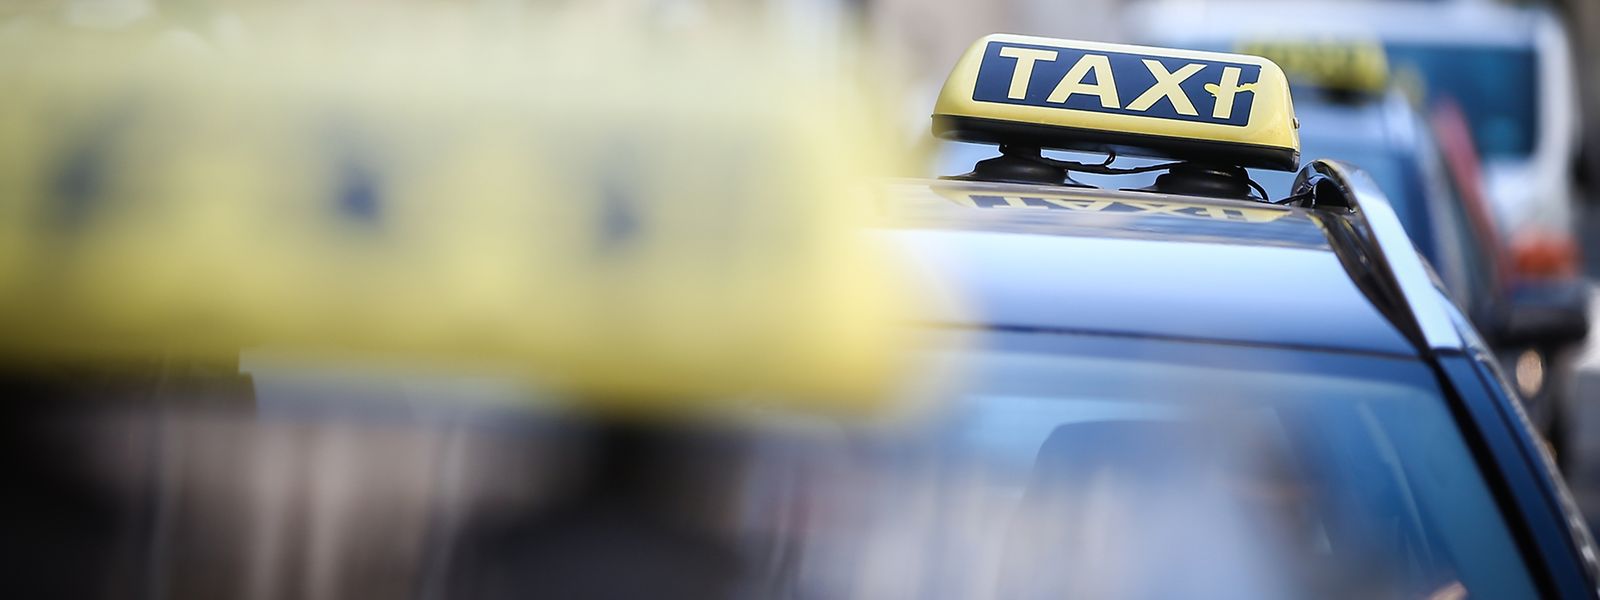 Introduite en 2016, la dernière réforme des taxis devrait être remodelée «prochainement» pour permettre de réglementer les locations de voitures avec chauffeur et donc développer des systèmes de type Uber au Grand-Duché.